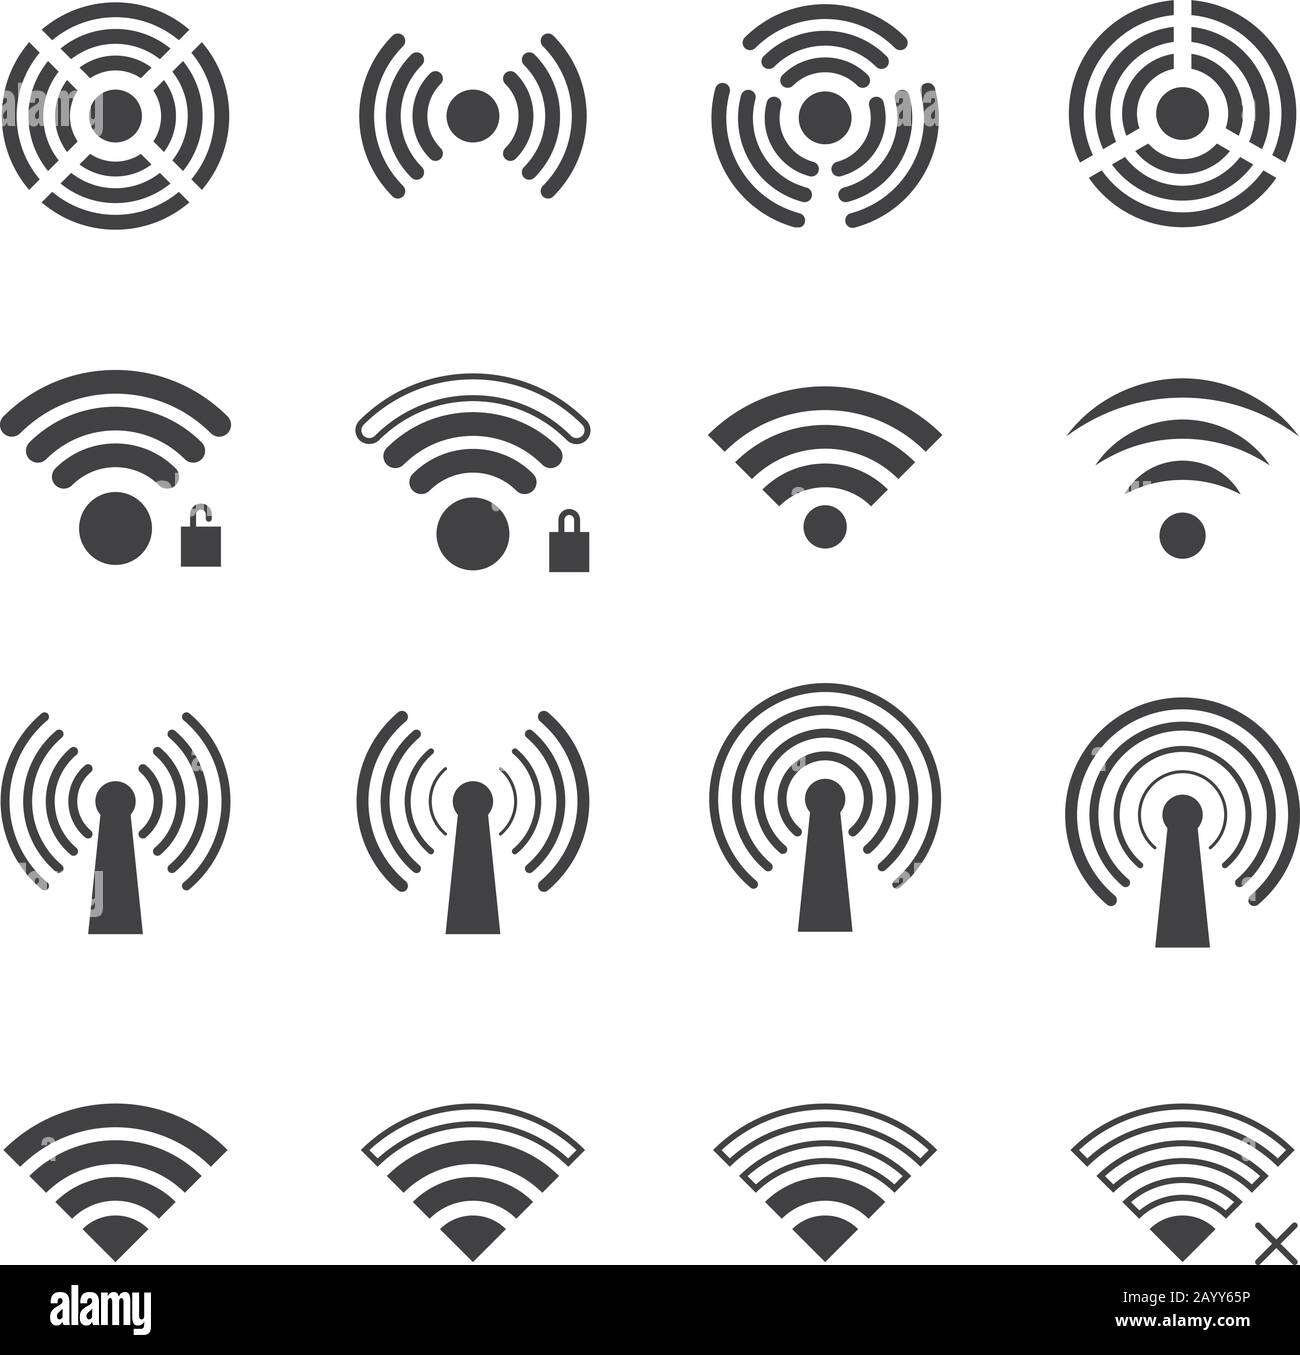 Iconos de vectores inalámbricos y wi-fi. Símbolos de conexión WiFi y señales de conexión inalámbrica Ilustración del Vector